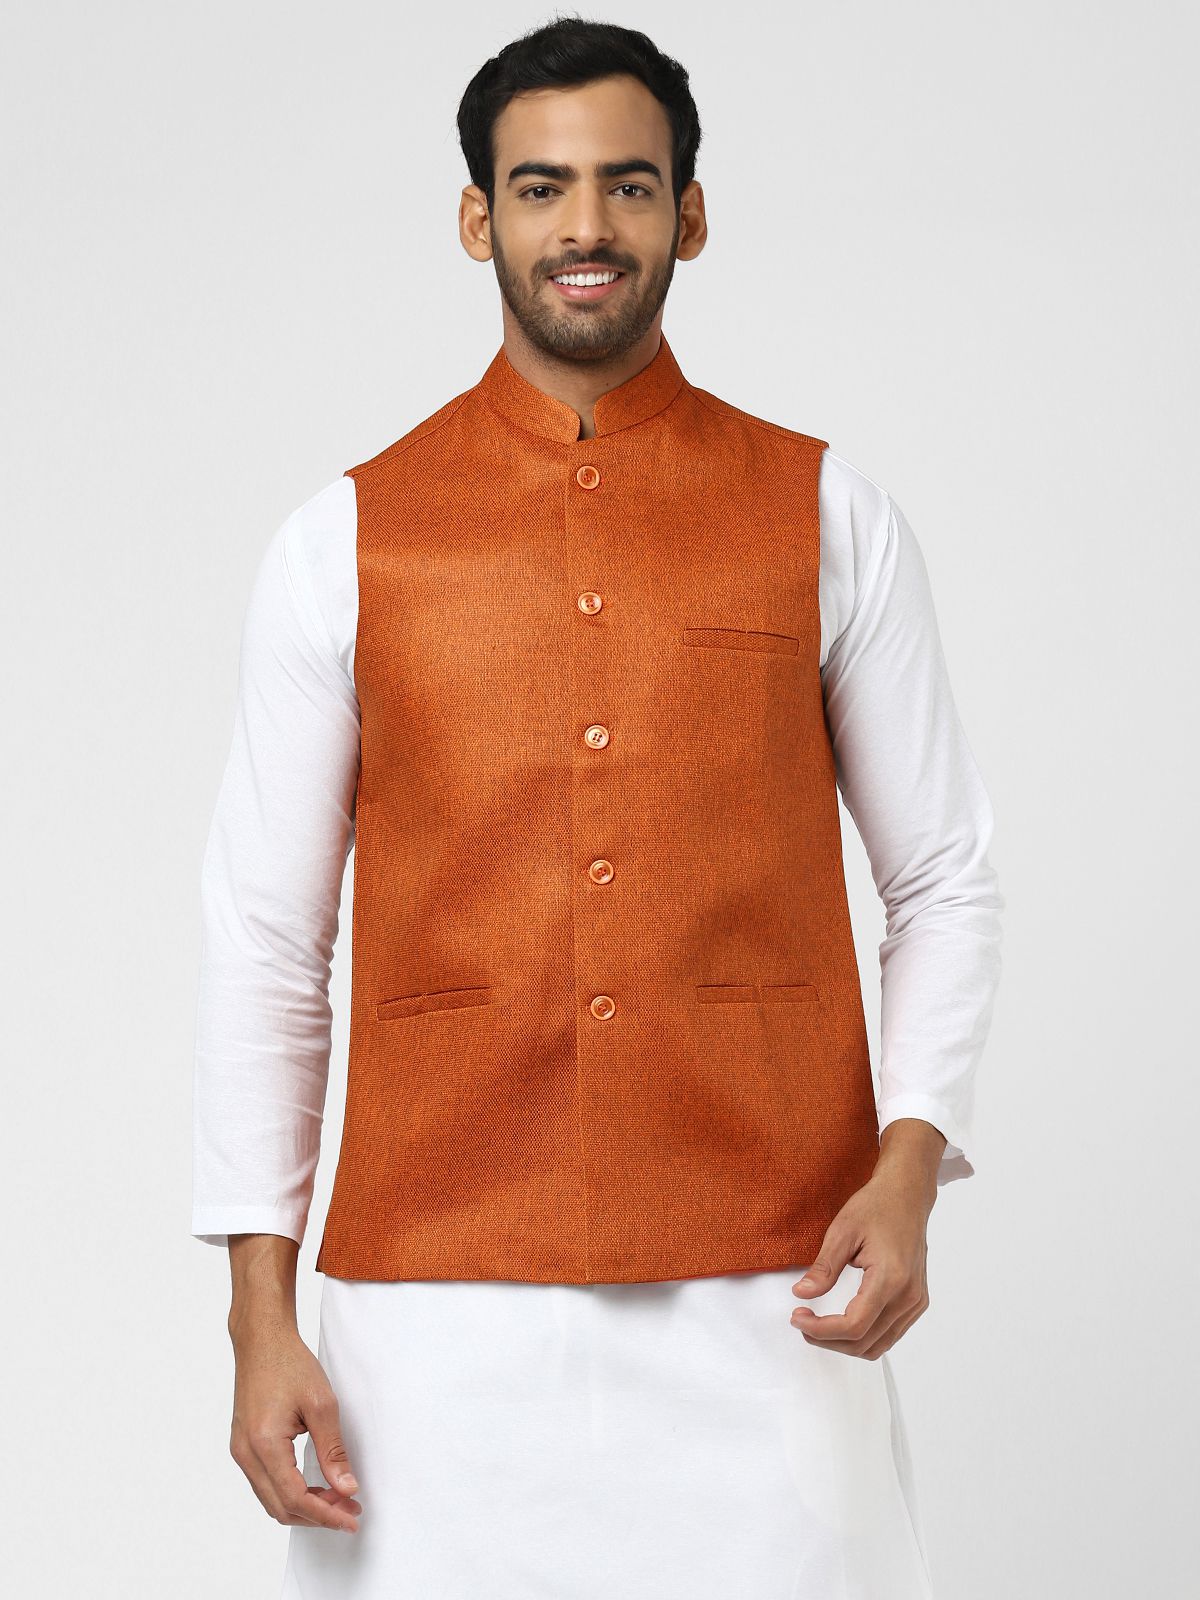     			DESHBANDHU DBK Orange Jute Nehru Jacket Single Pack